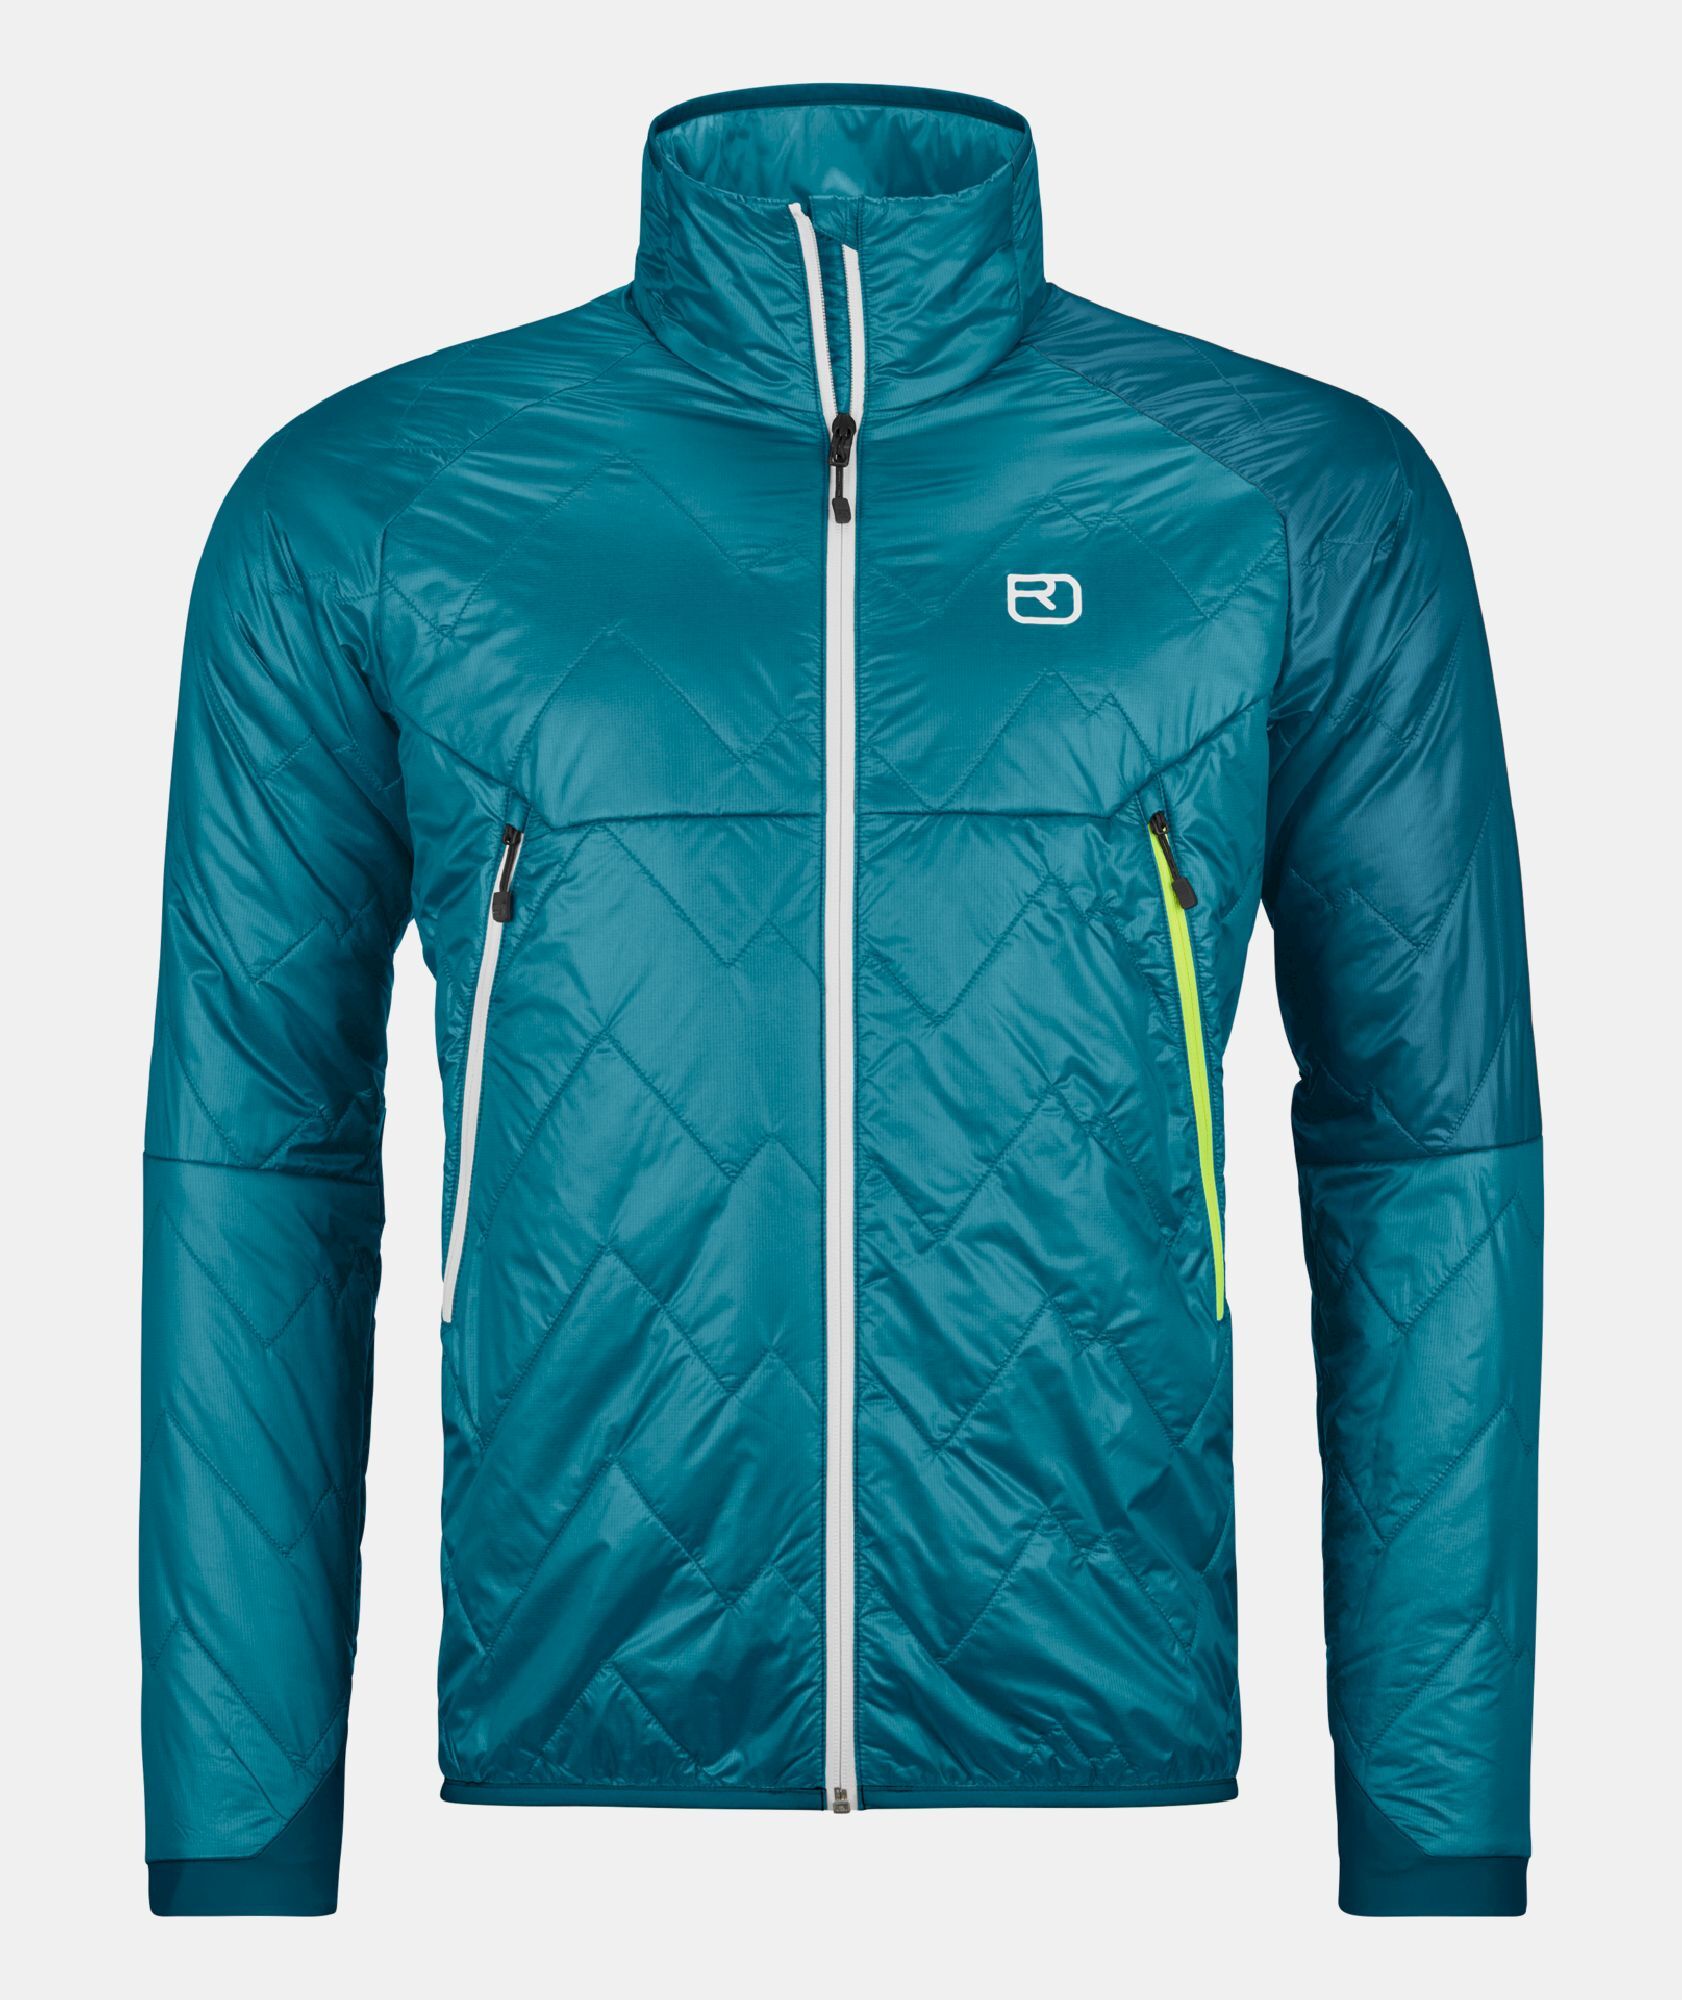 Ortovox Swisswool Piz Vial Jacket - Merino jacket - Men's | Hardloop